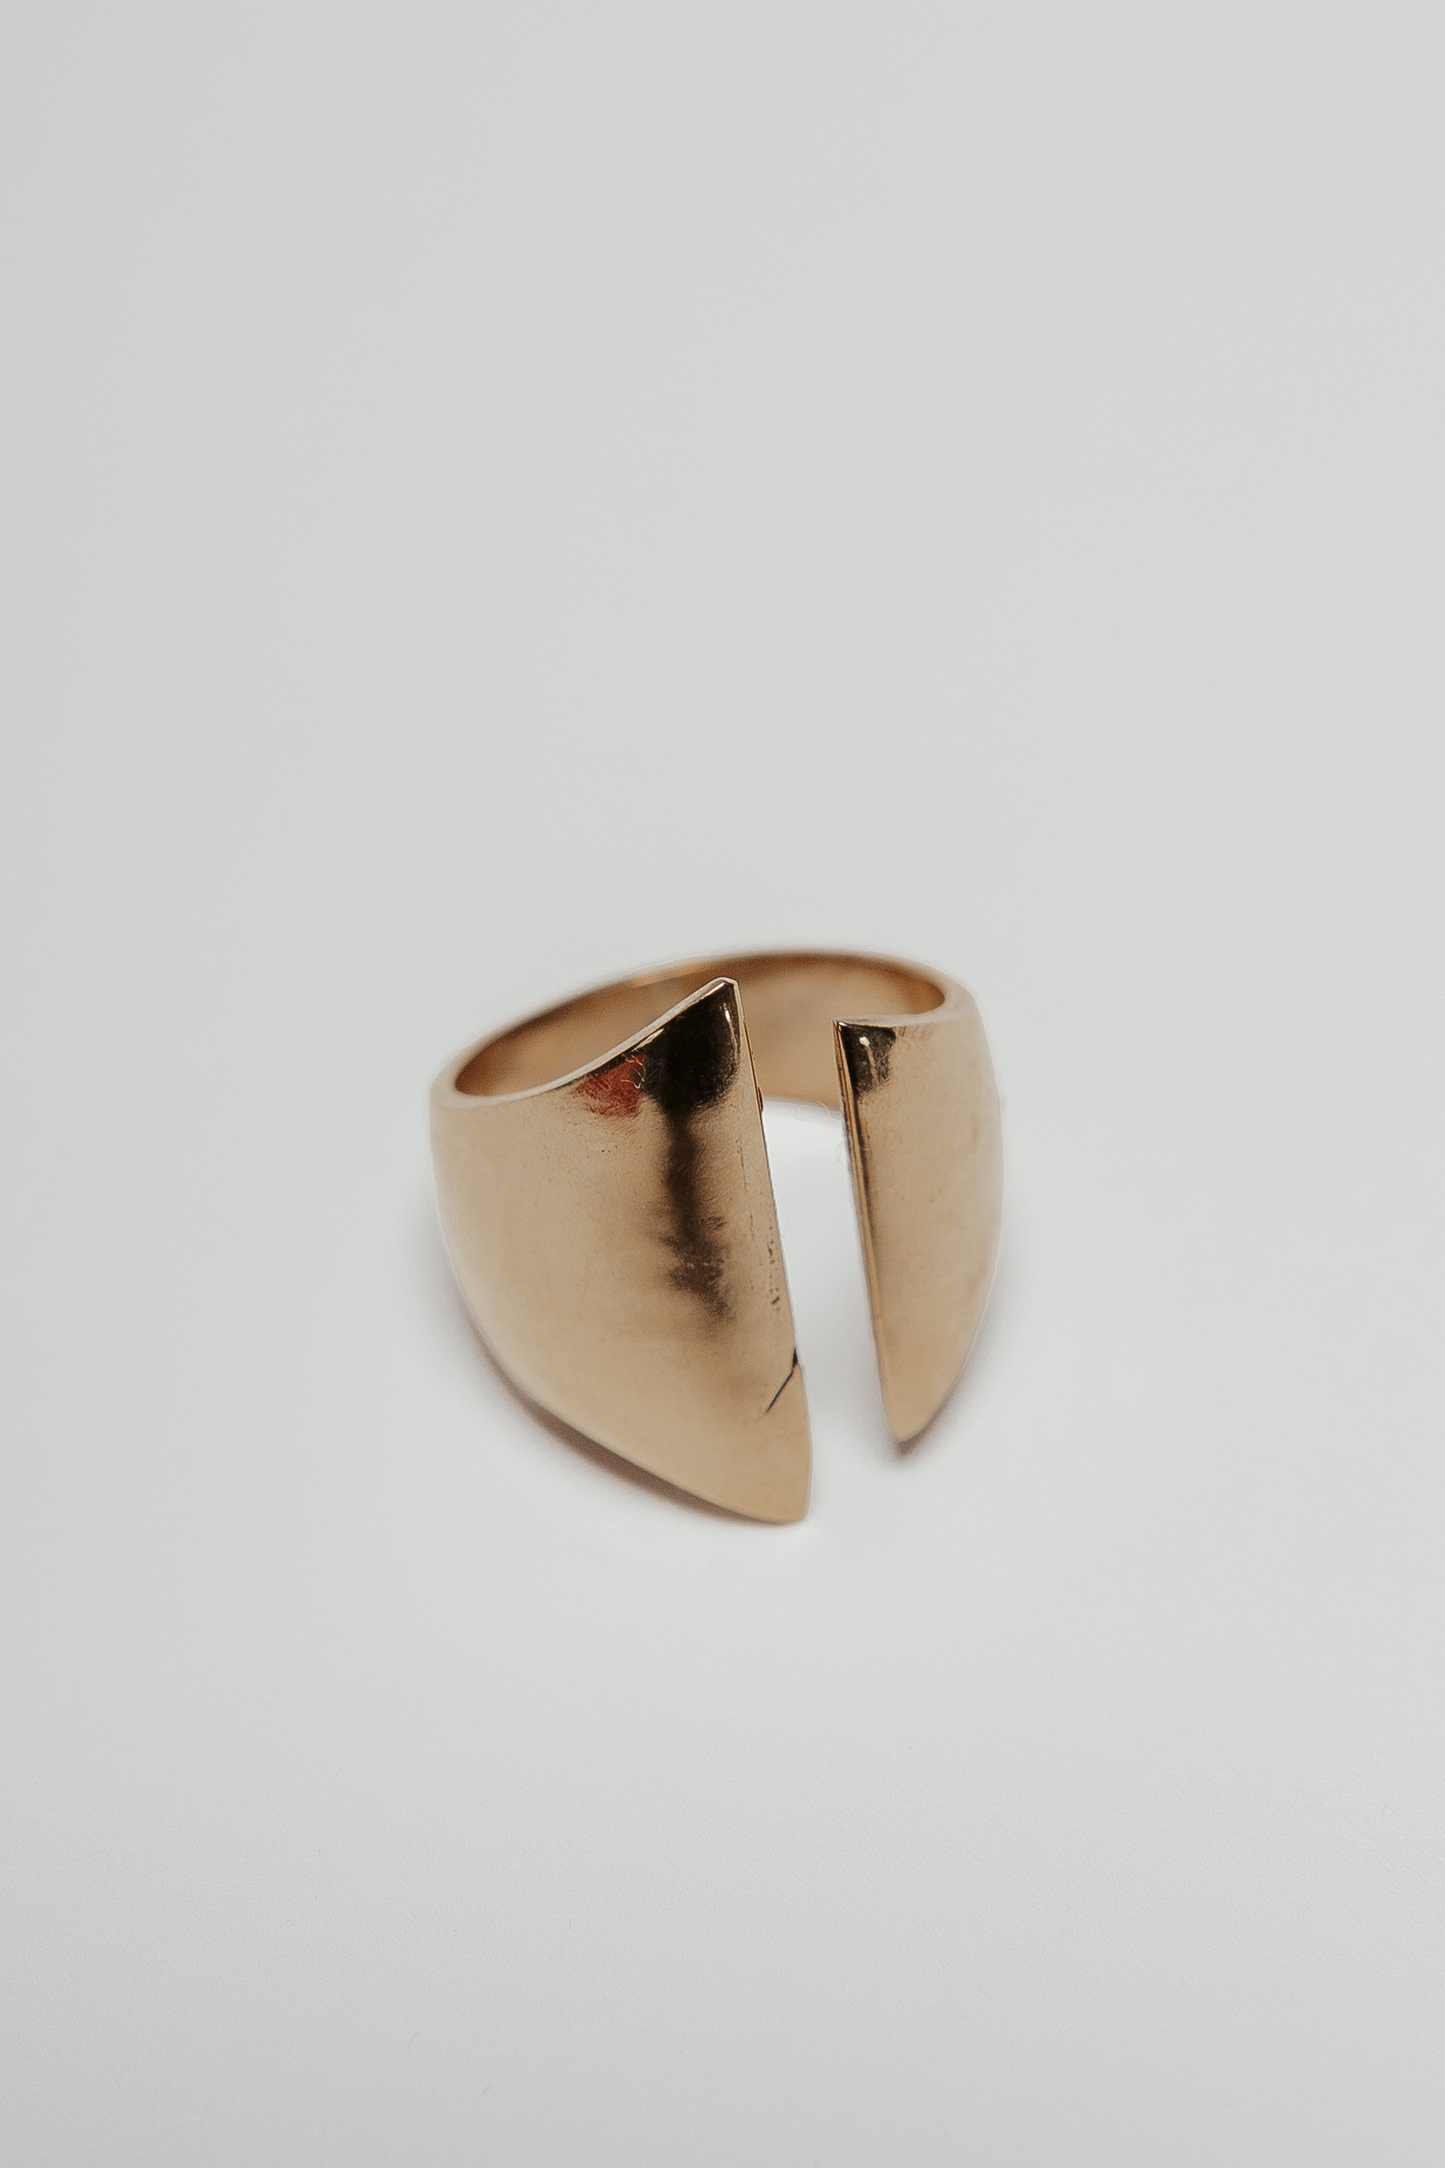 Brass ring open modern handmade gold